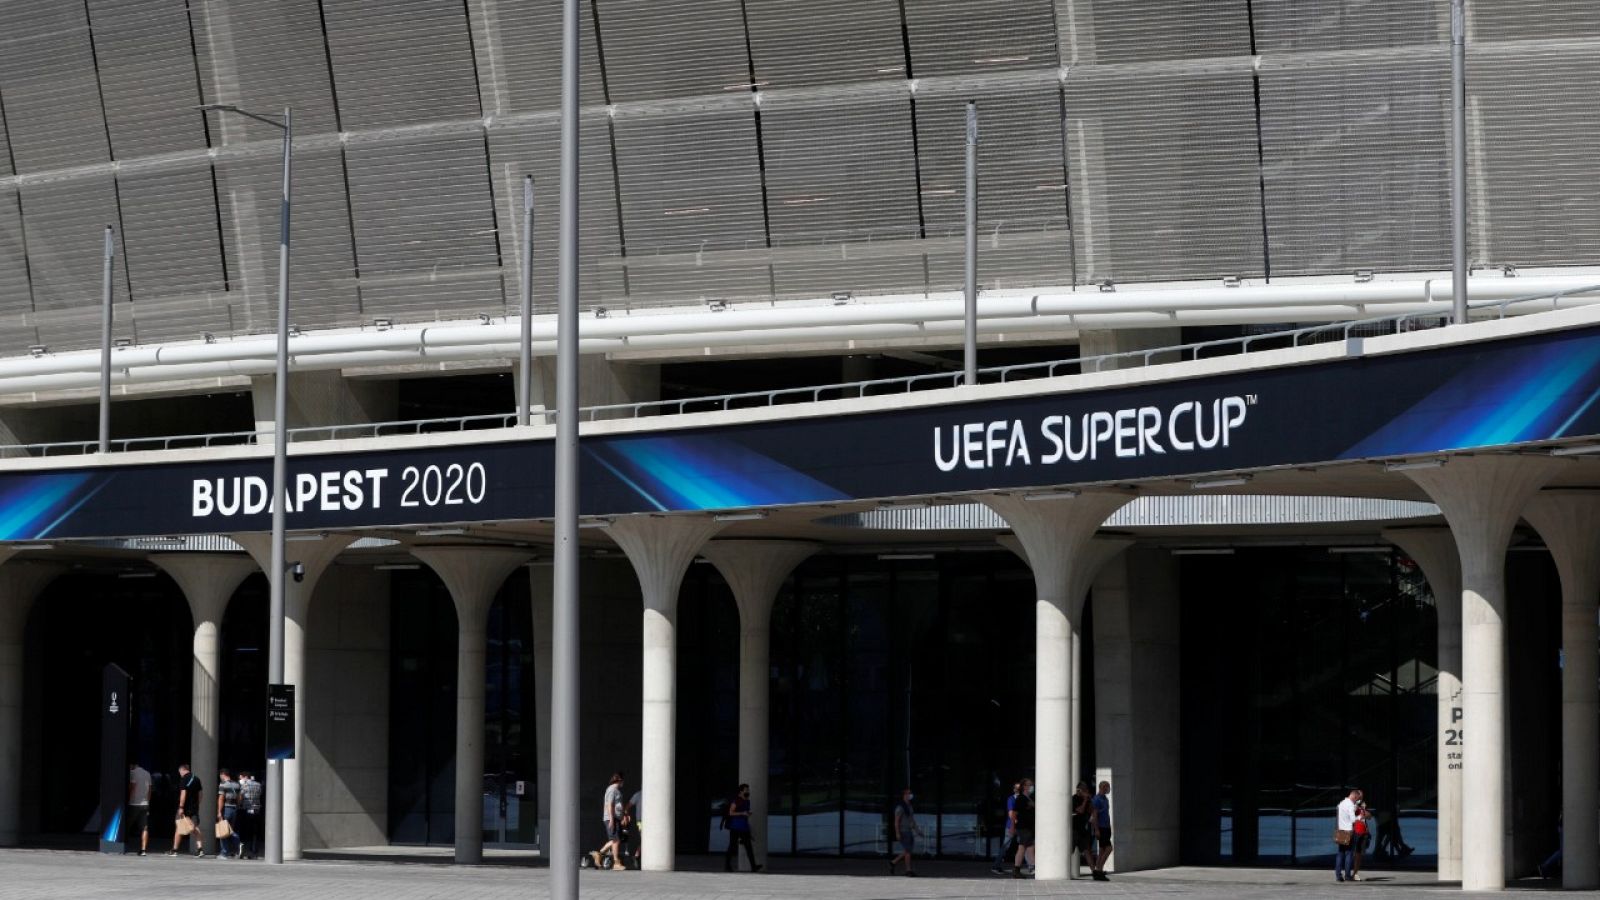 Imagen del Puskas Arenas de Budapest, sede de la Supercopa de Europa entre Bayern y Sevilla.